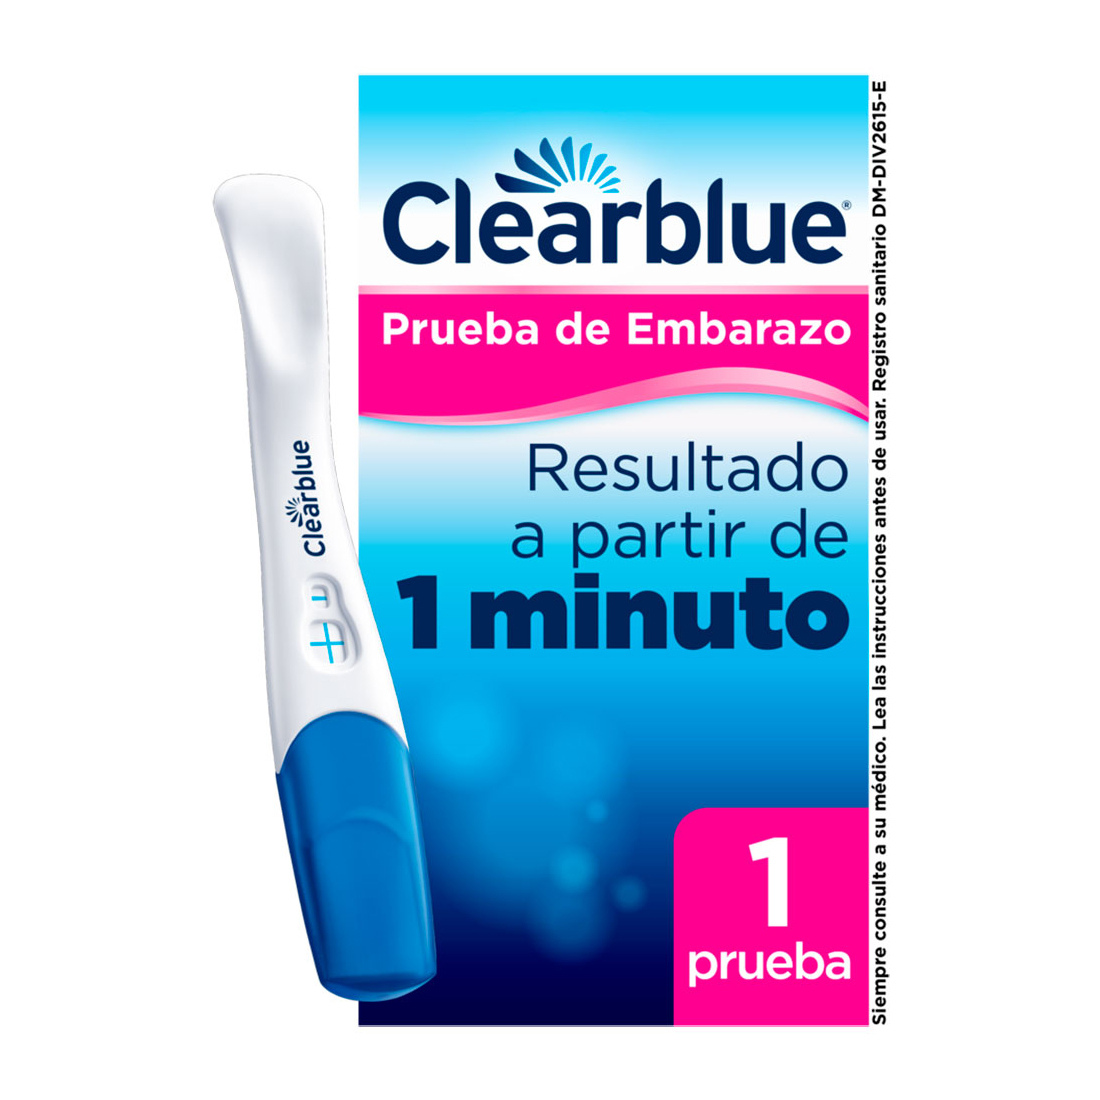 Clearblue Plus Prueba de Embarazo